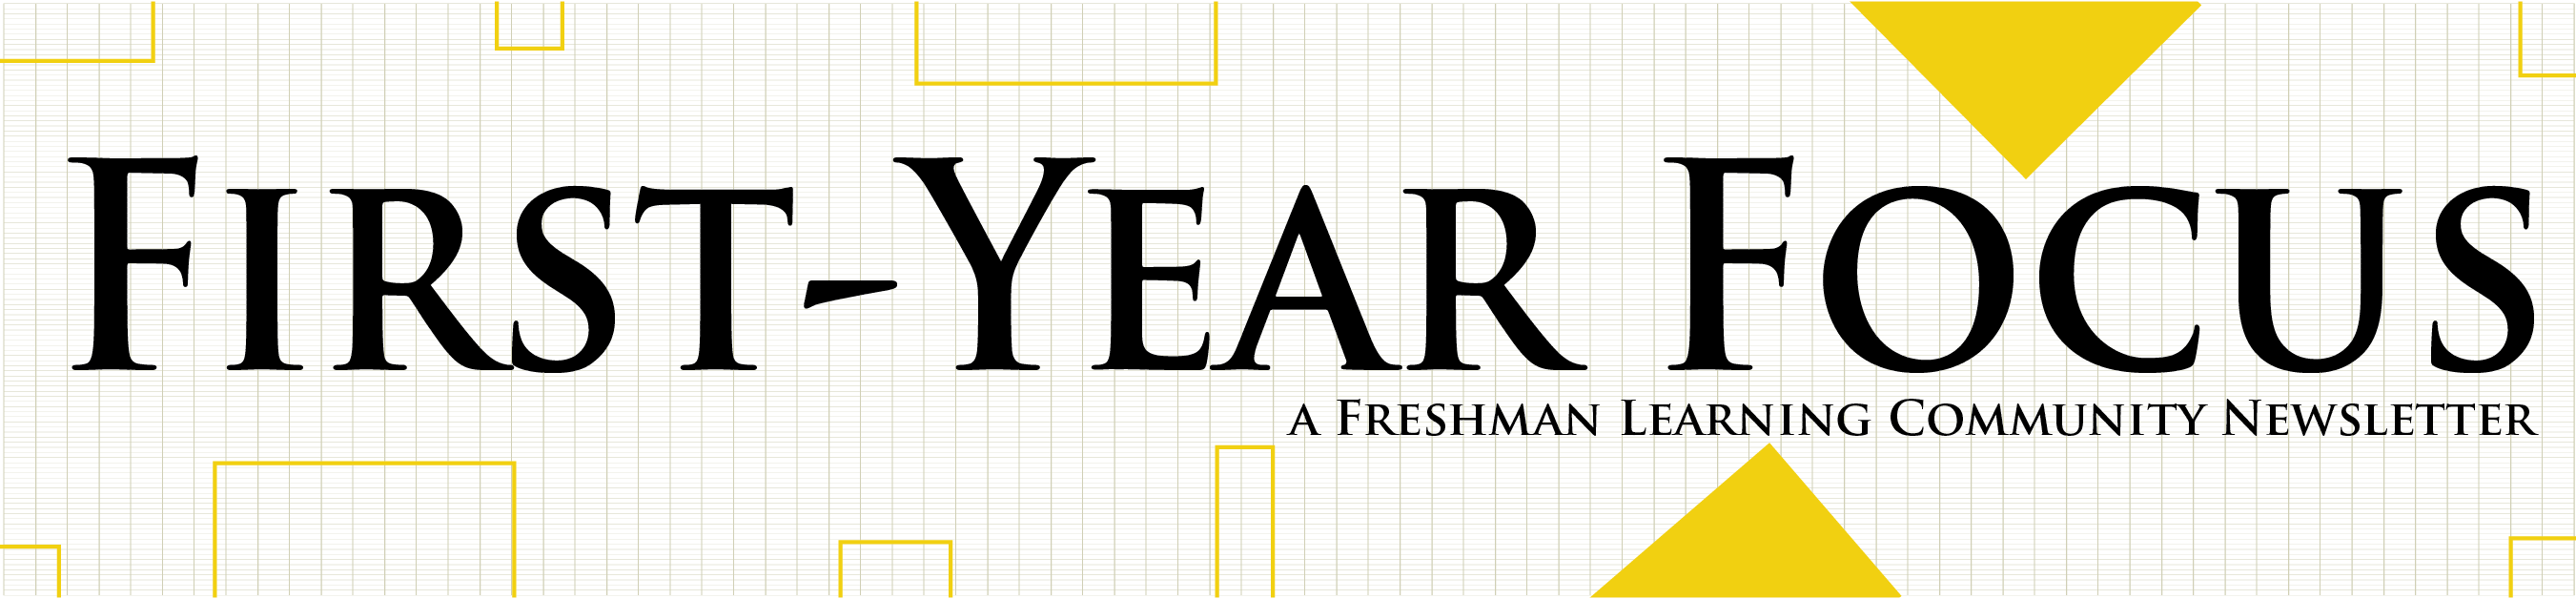 First-Year Focus Newsletter banner